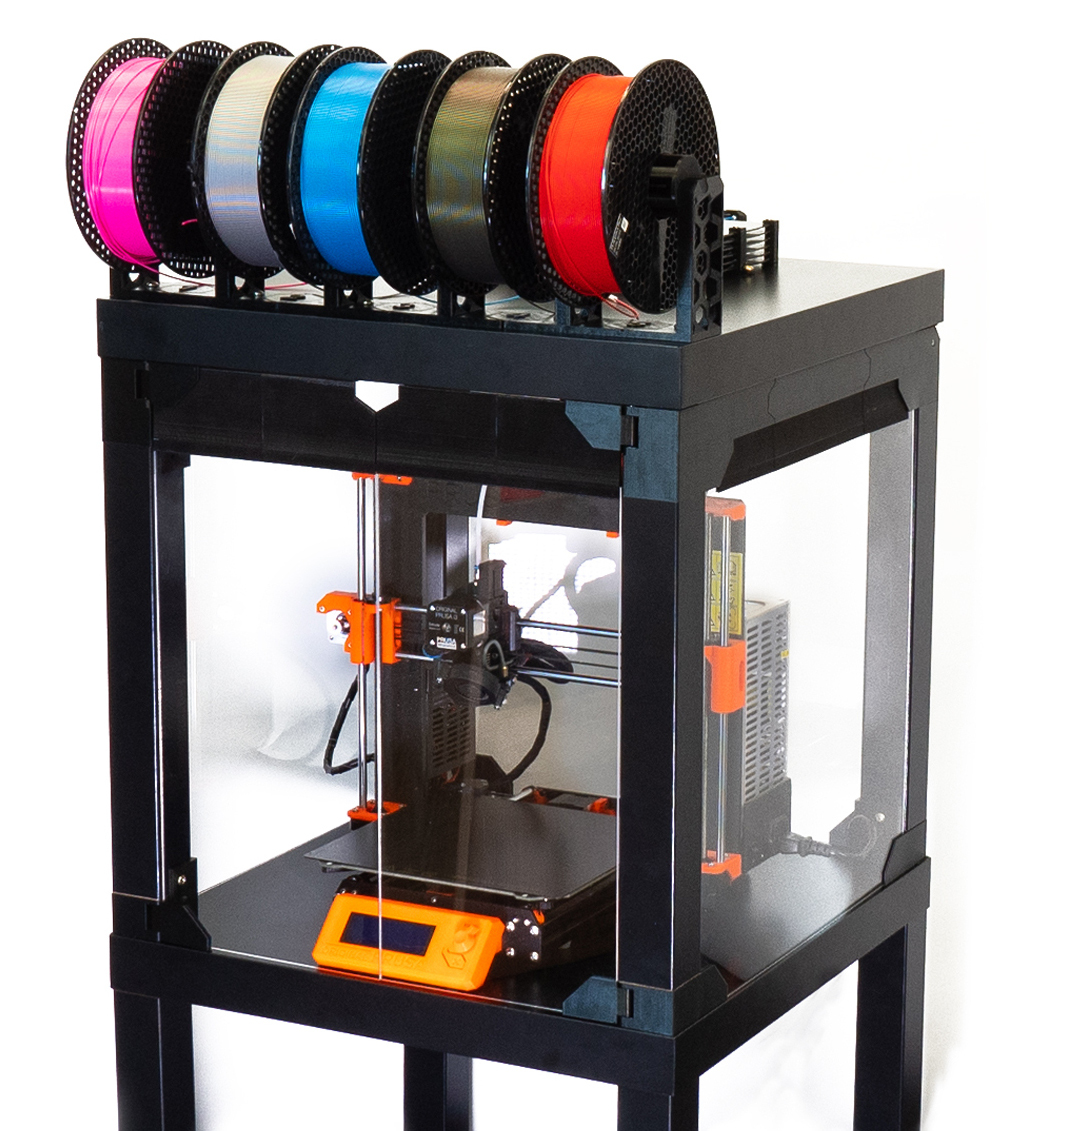 efterfølger Saucer ydre 3D Printering: Why Aren't Enclosures Easier? | Hackaday